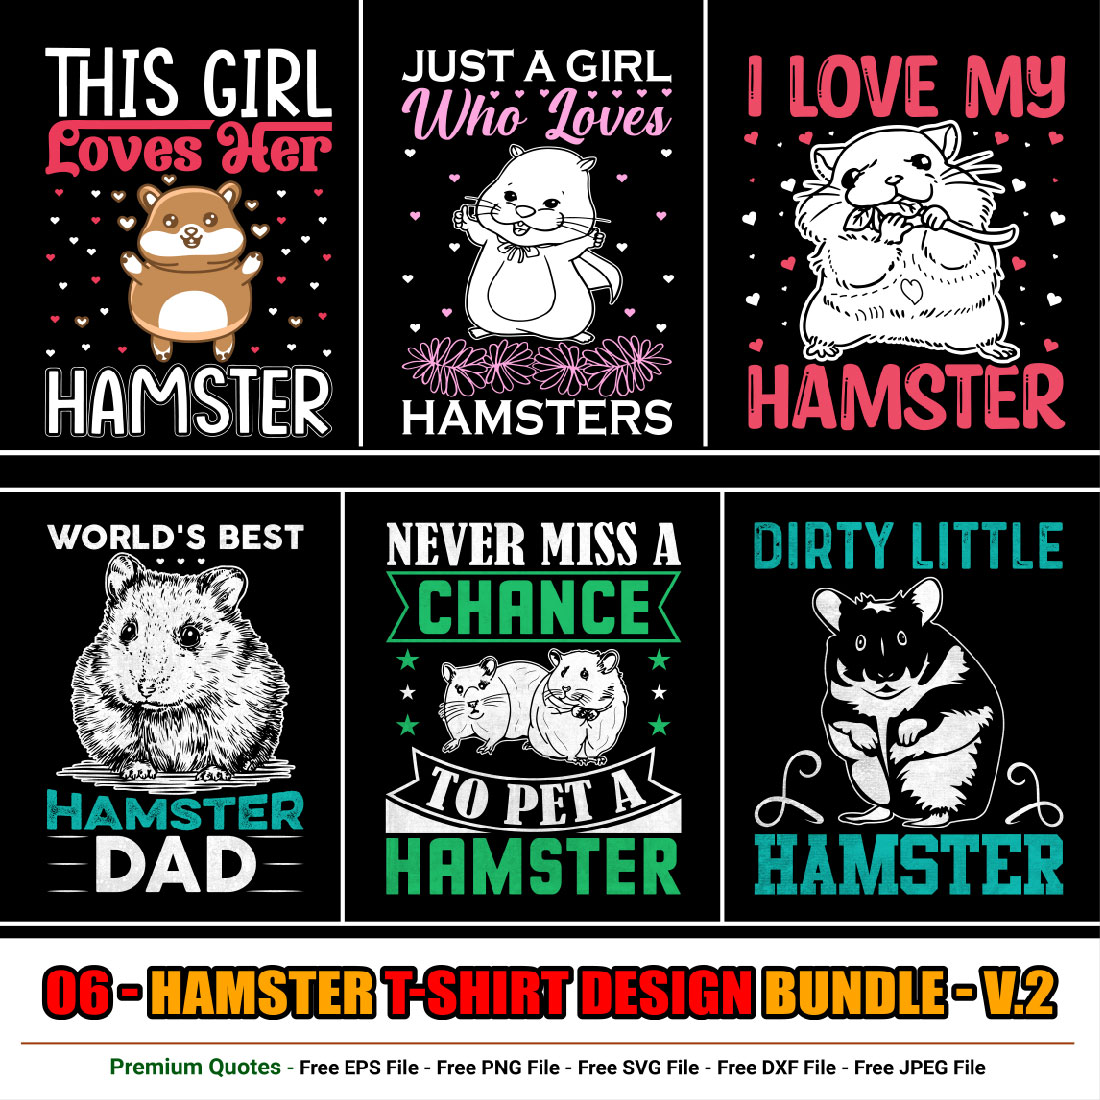 Hamster t-shirt design bundle cover image.